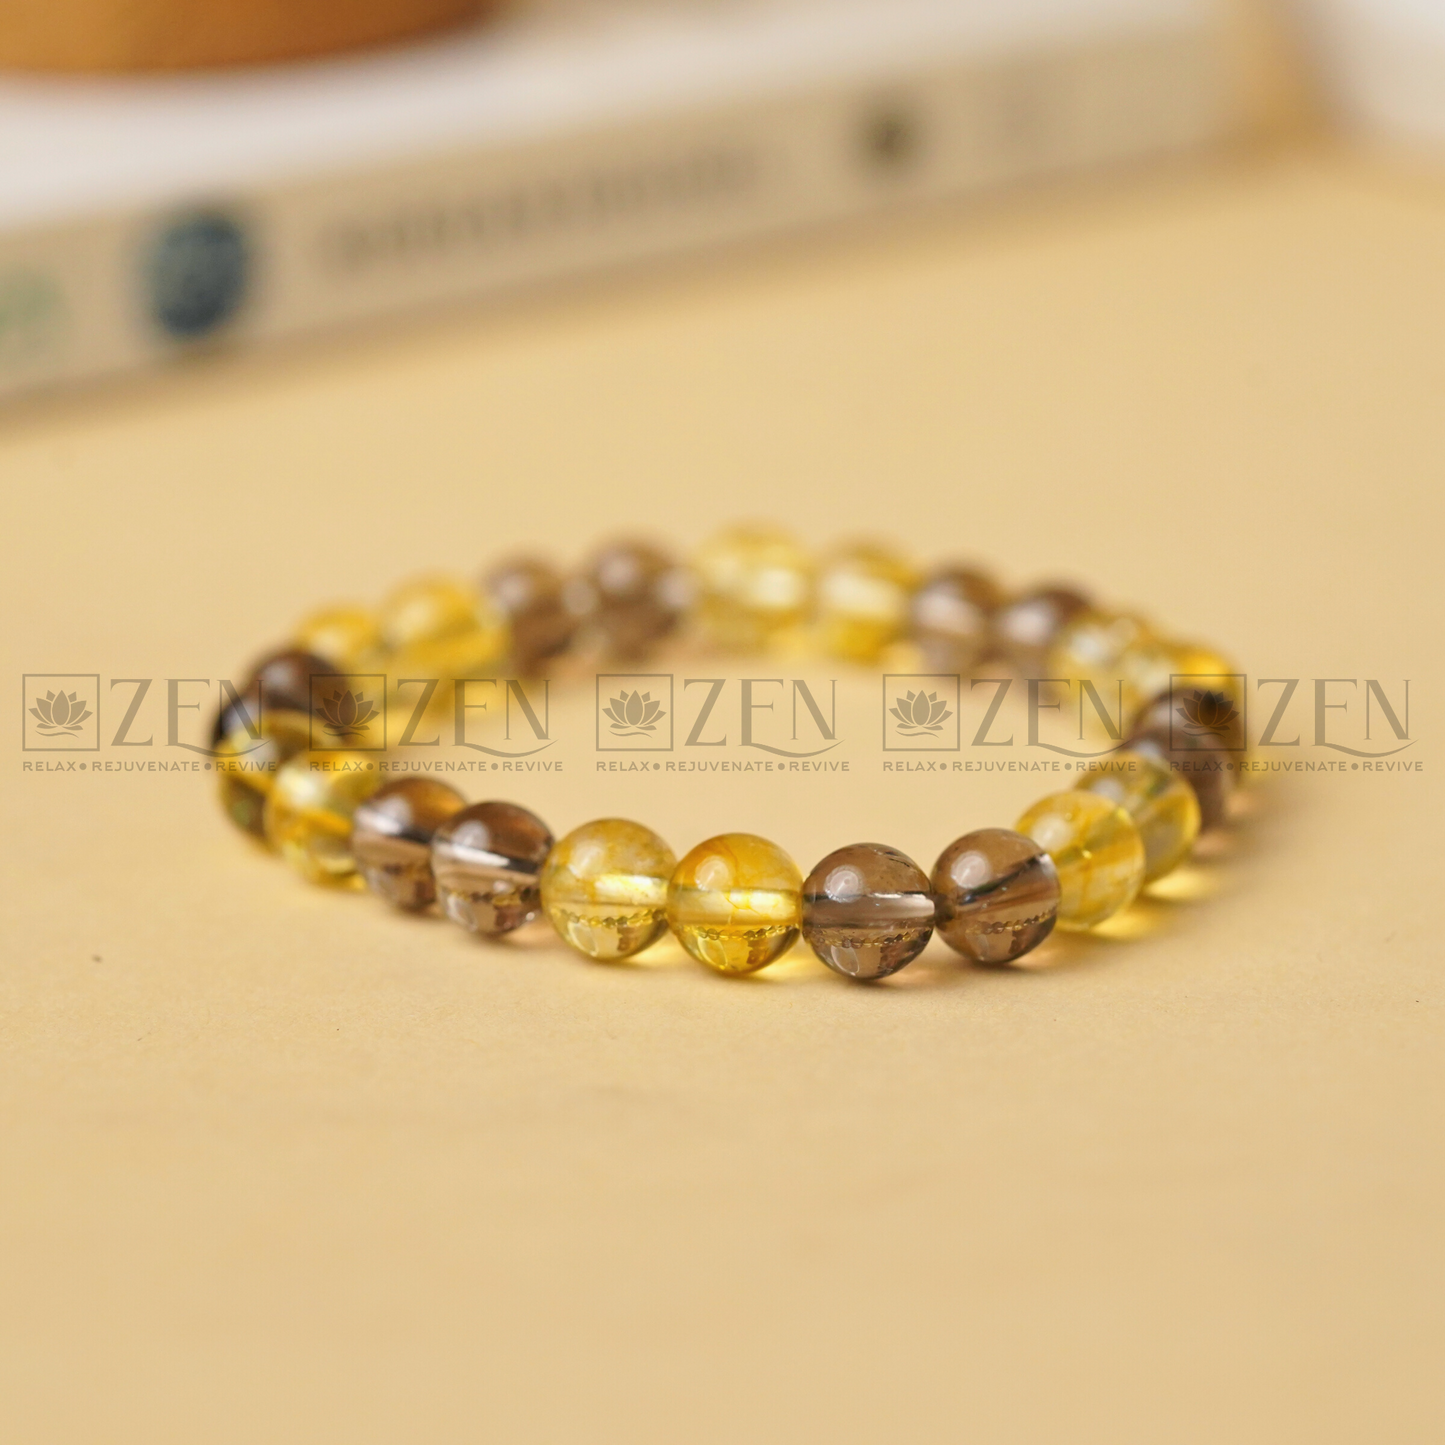 Zen Success & Protection Bracelet - The Zen Crystals